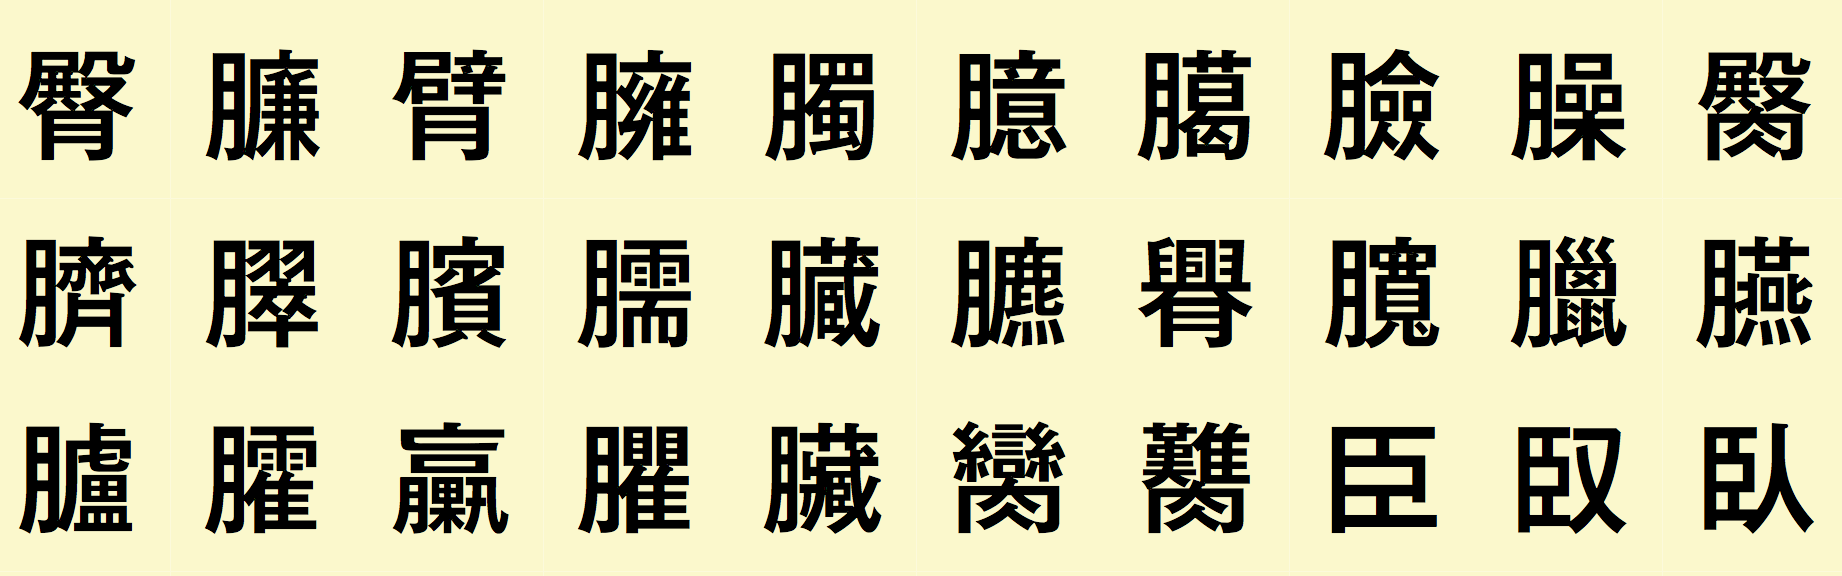 Otf Font Morisawa 216 .65